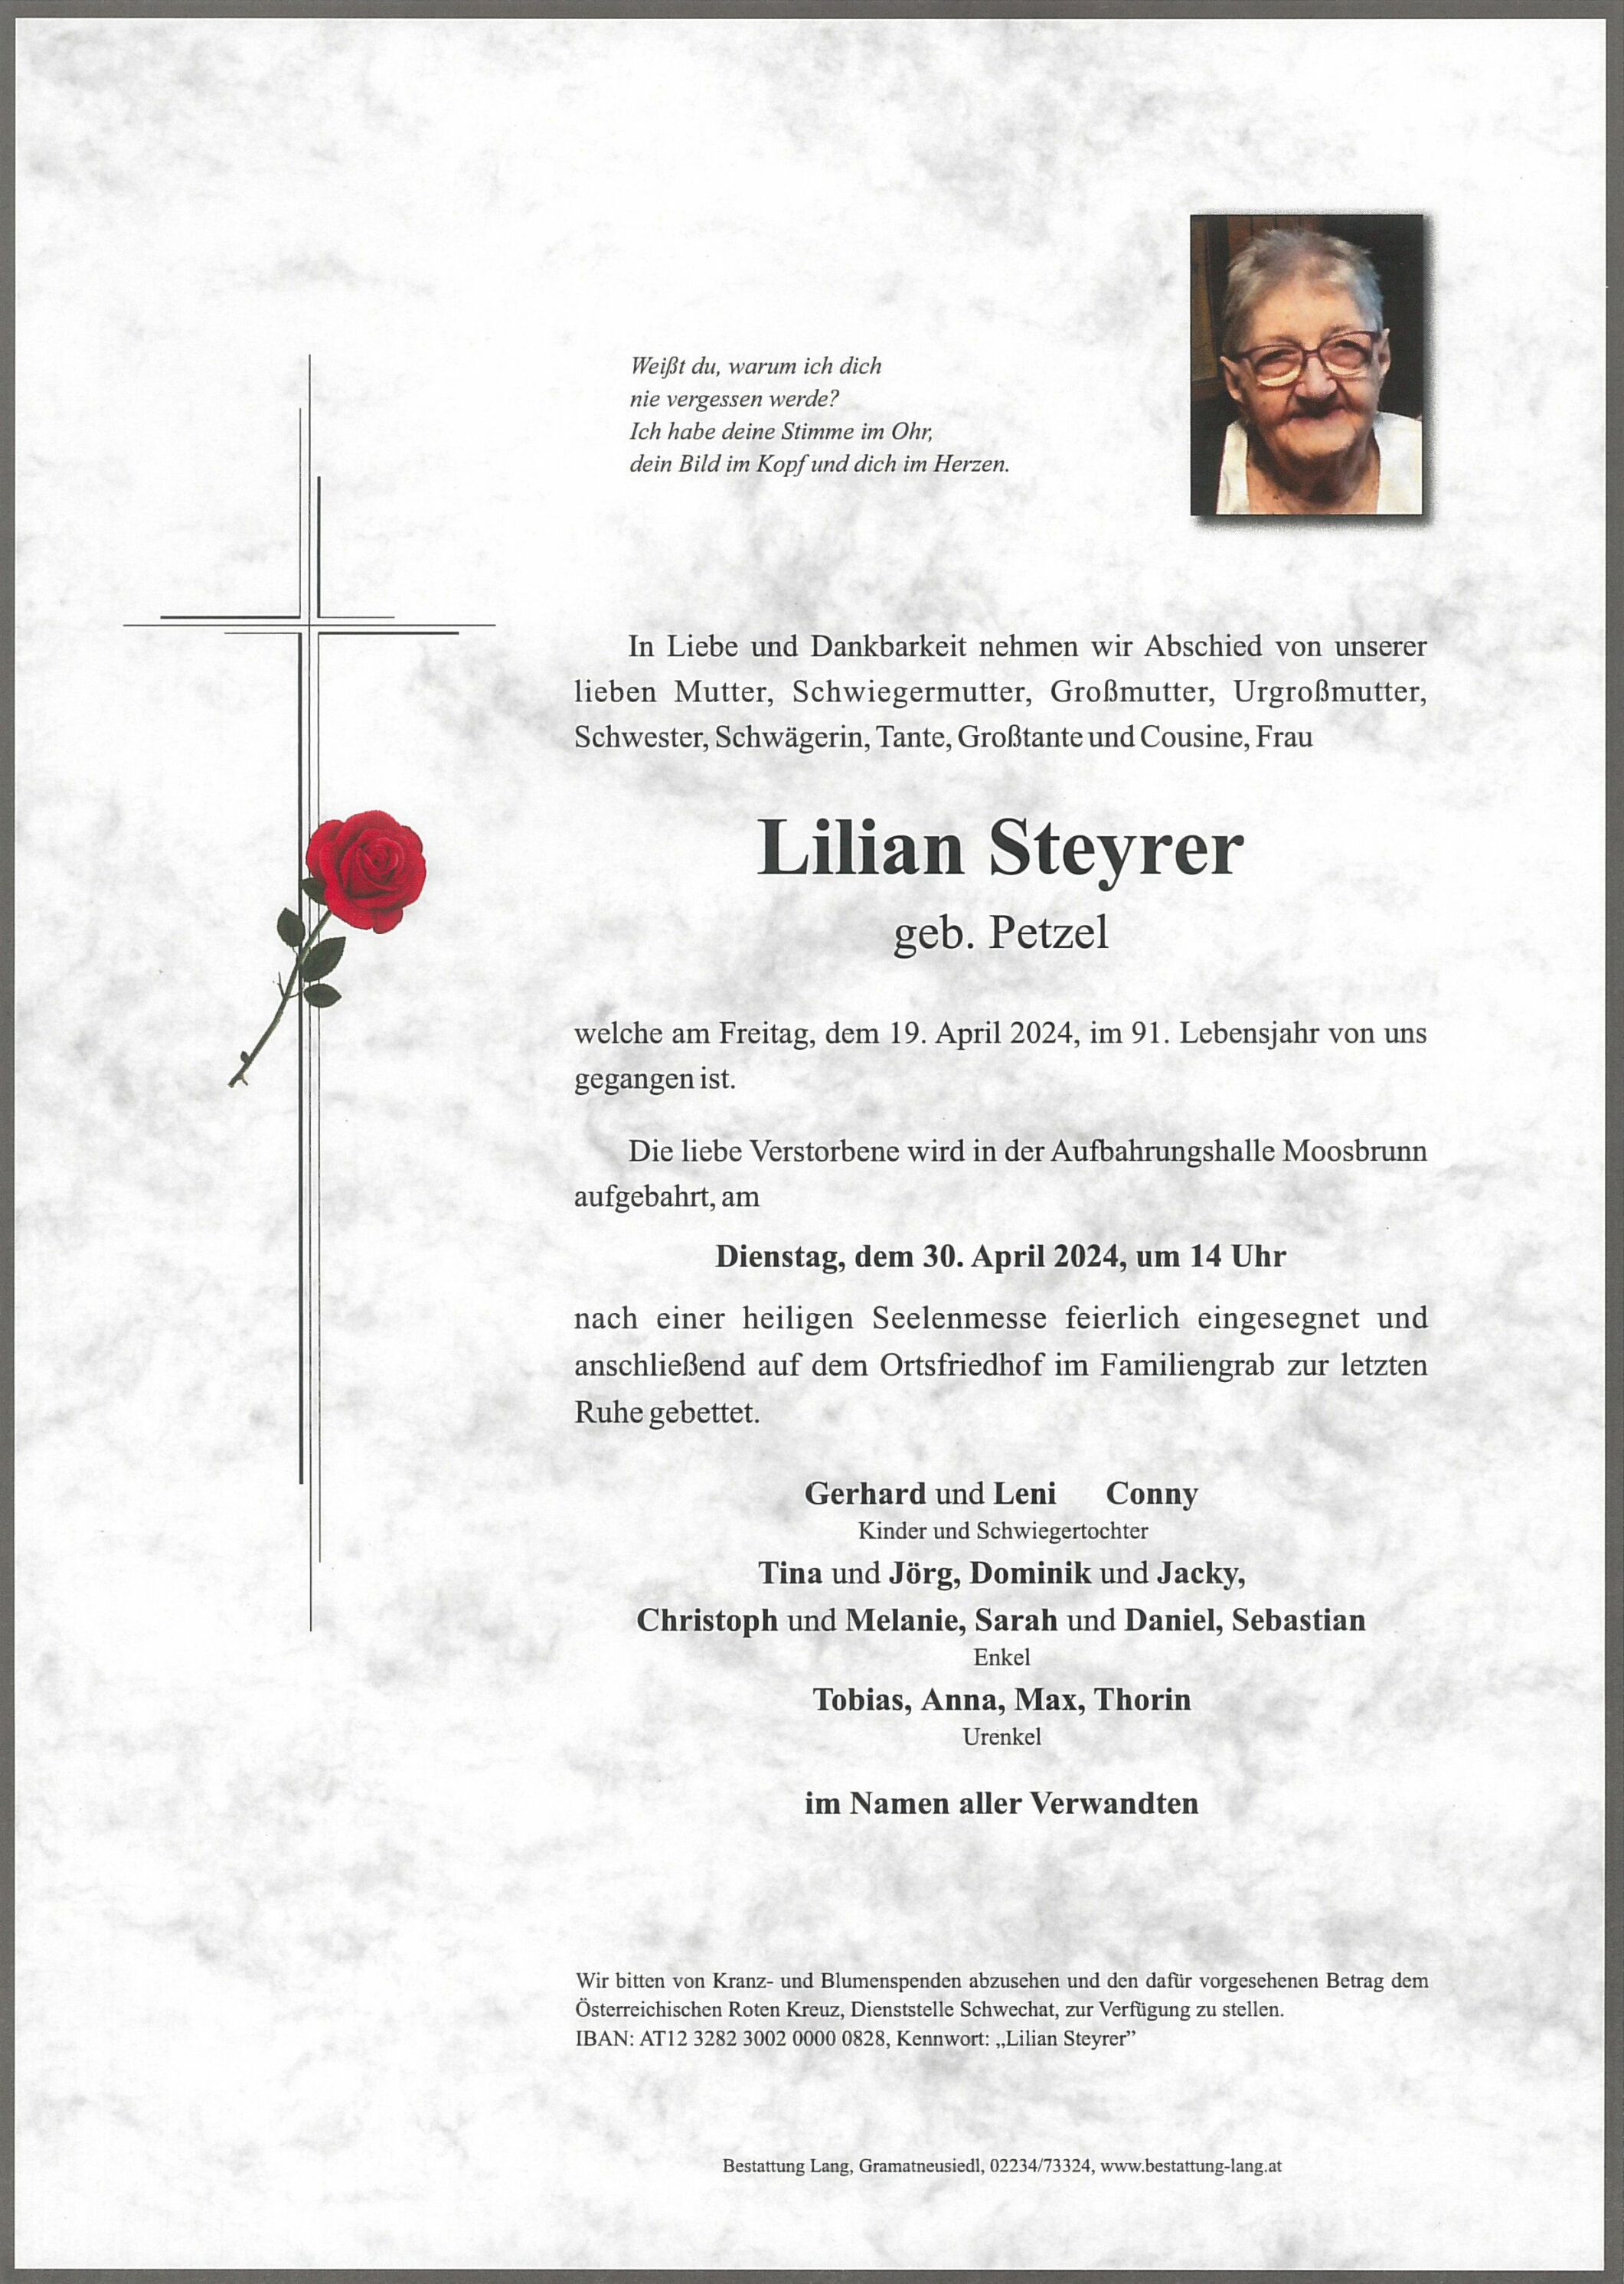 Lilian Steyrer